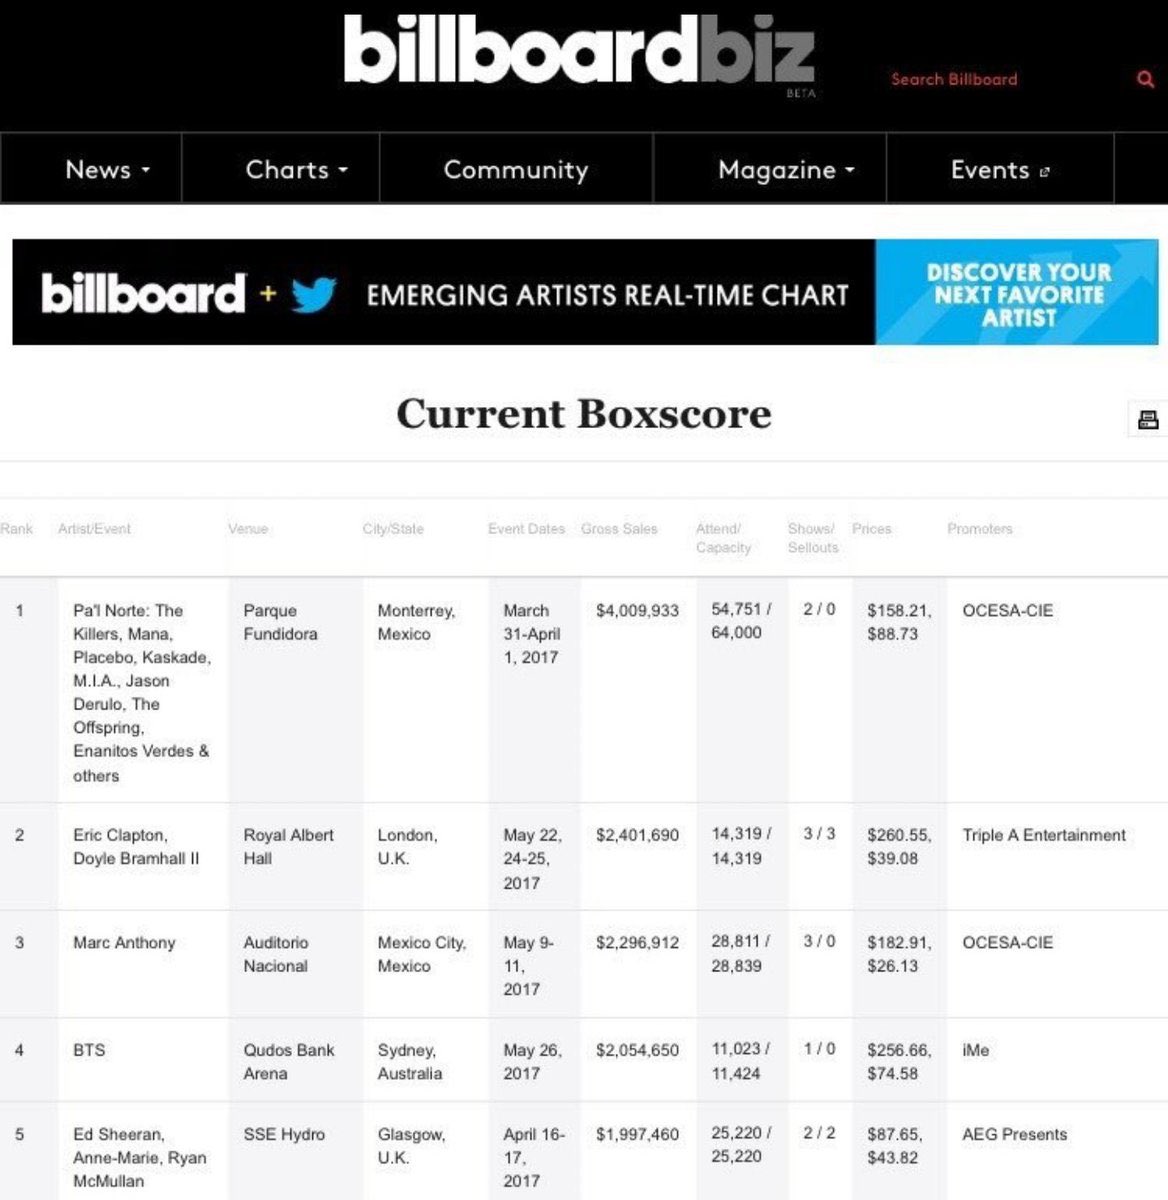 BTS попали в ТОП 5 чарта Billboard по кассовым сборам за концерты